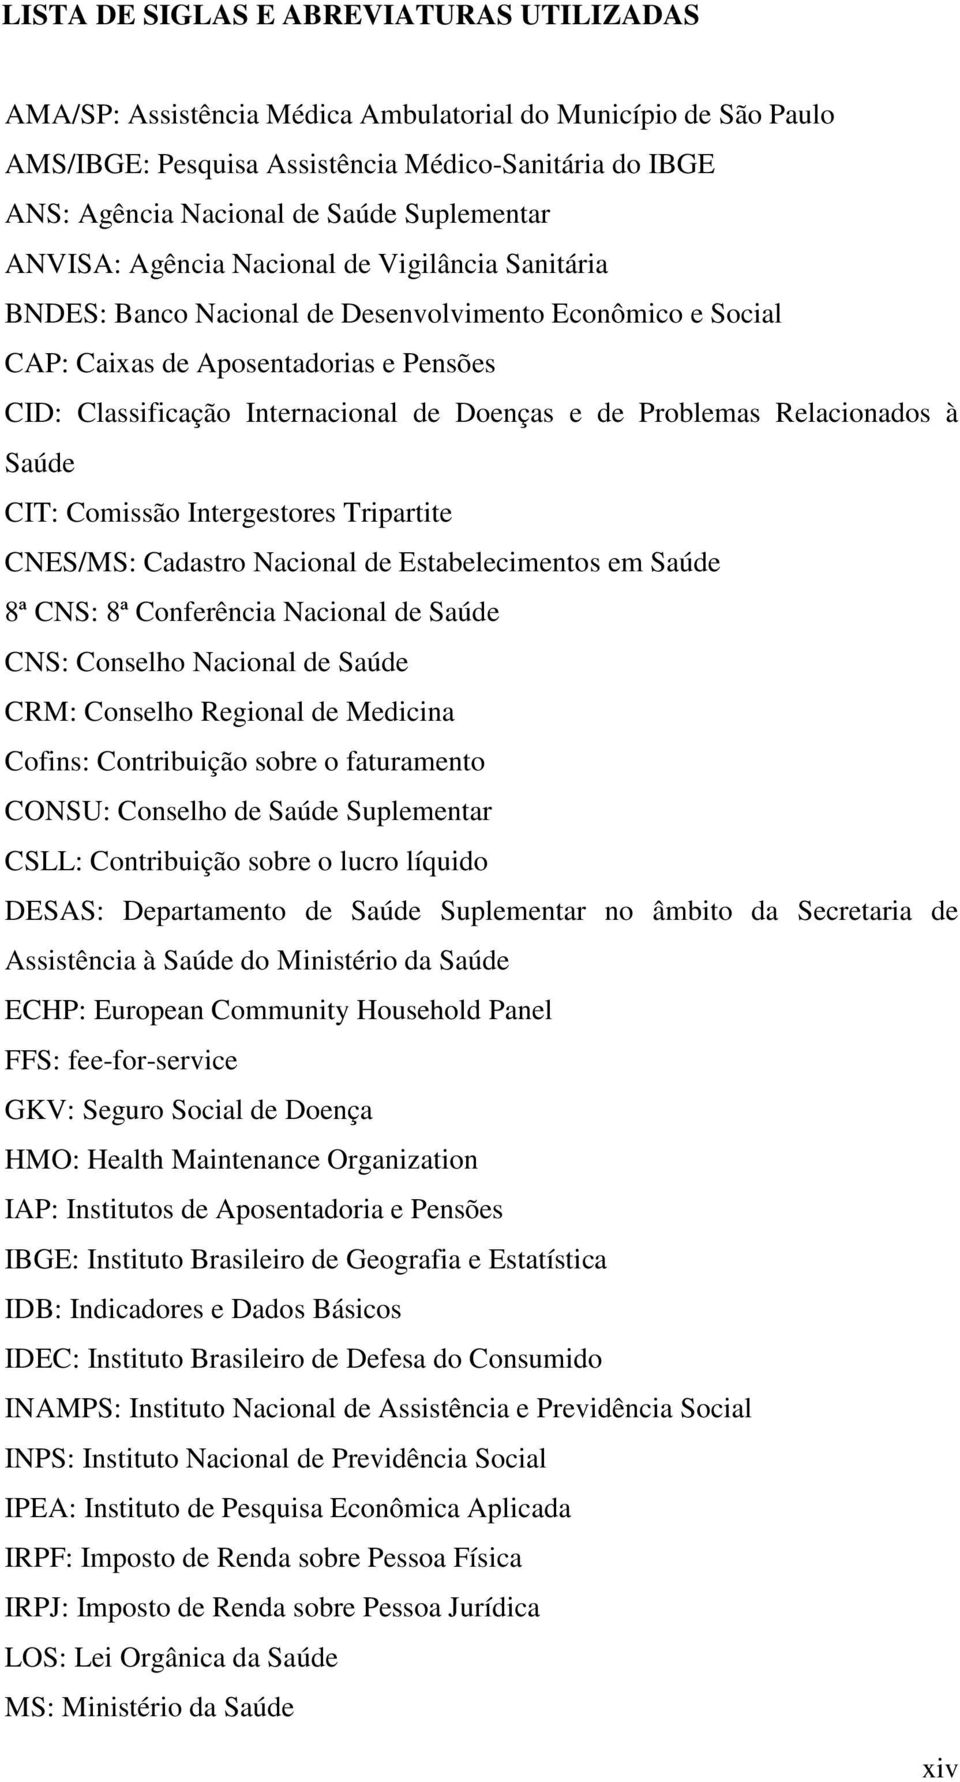 Doenças e de Problemas Relacionados à Saúde CIT: Comissão Intergestores Tripartite CNES/MS: Cadastro Nacional de Estabelecimentos em Saúde 8ª CNS: 8ª Conferência Nacional de Saúde CNS: Conselho